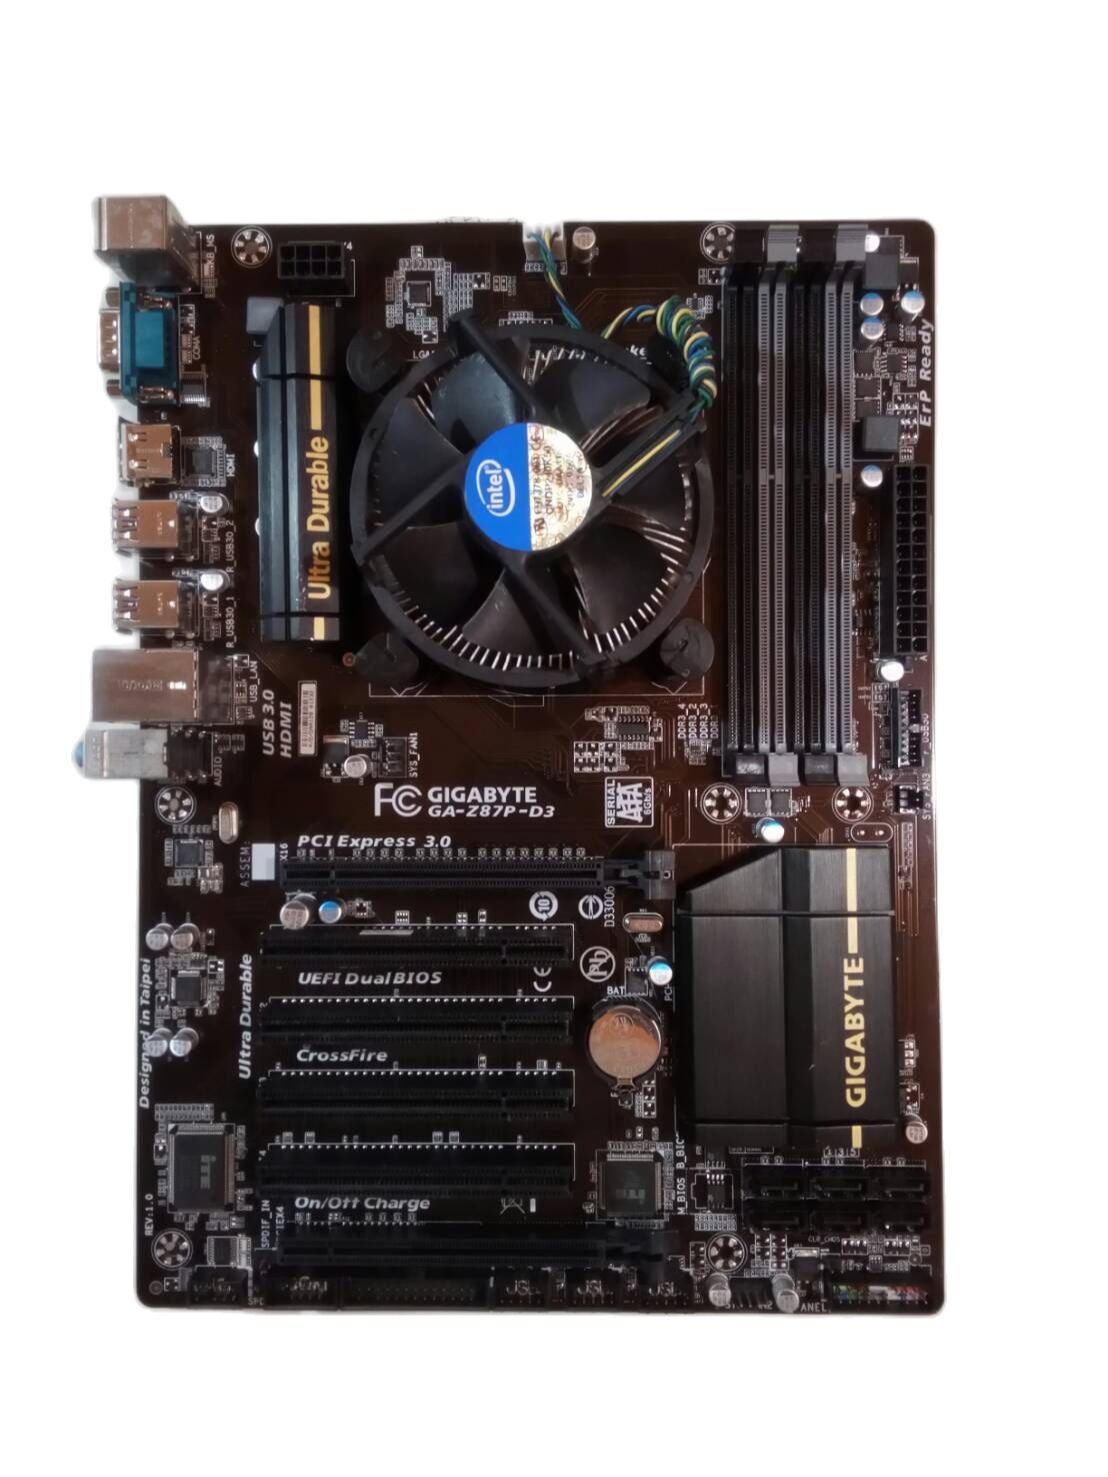 เมนบอร์ดพร้อม CPU i3-4150+Mainboard GA-Z87P-D3 สภาพใหม่ๆสวยๆ พร้อมฝาหลัง RAM MAX 32GB สินค้าตามรูปปก ฟรีค่าส่ง